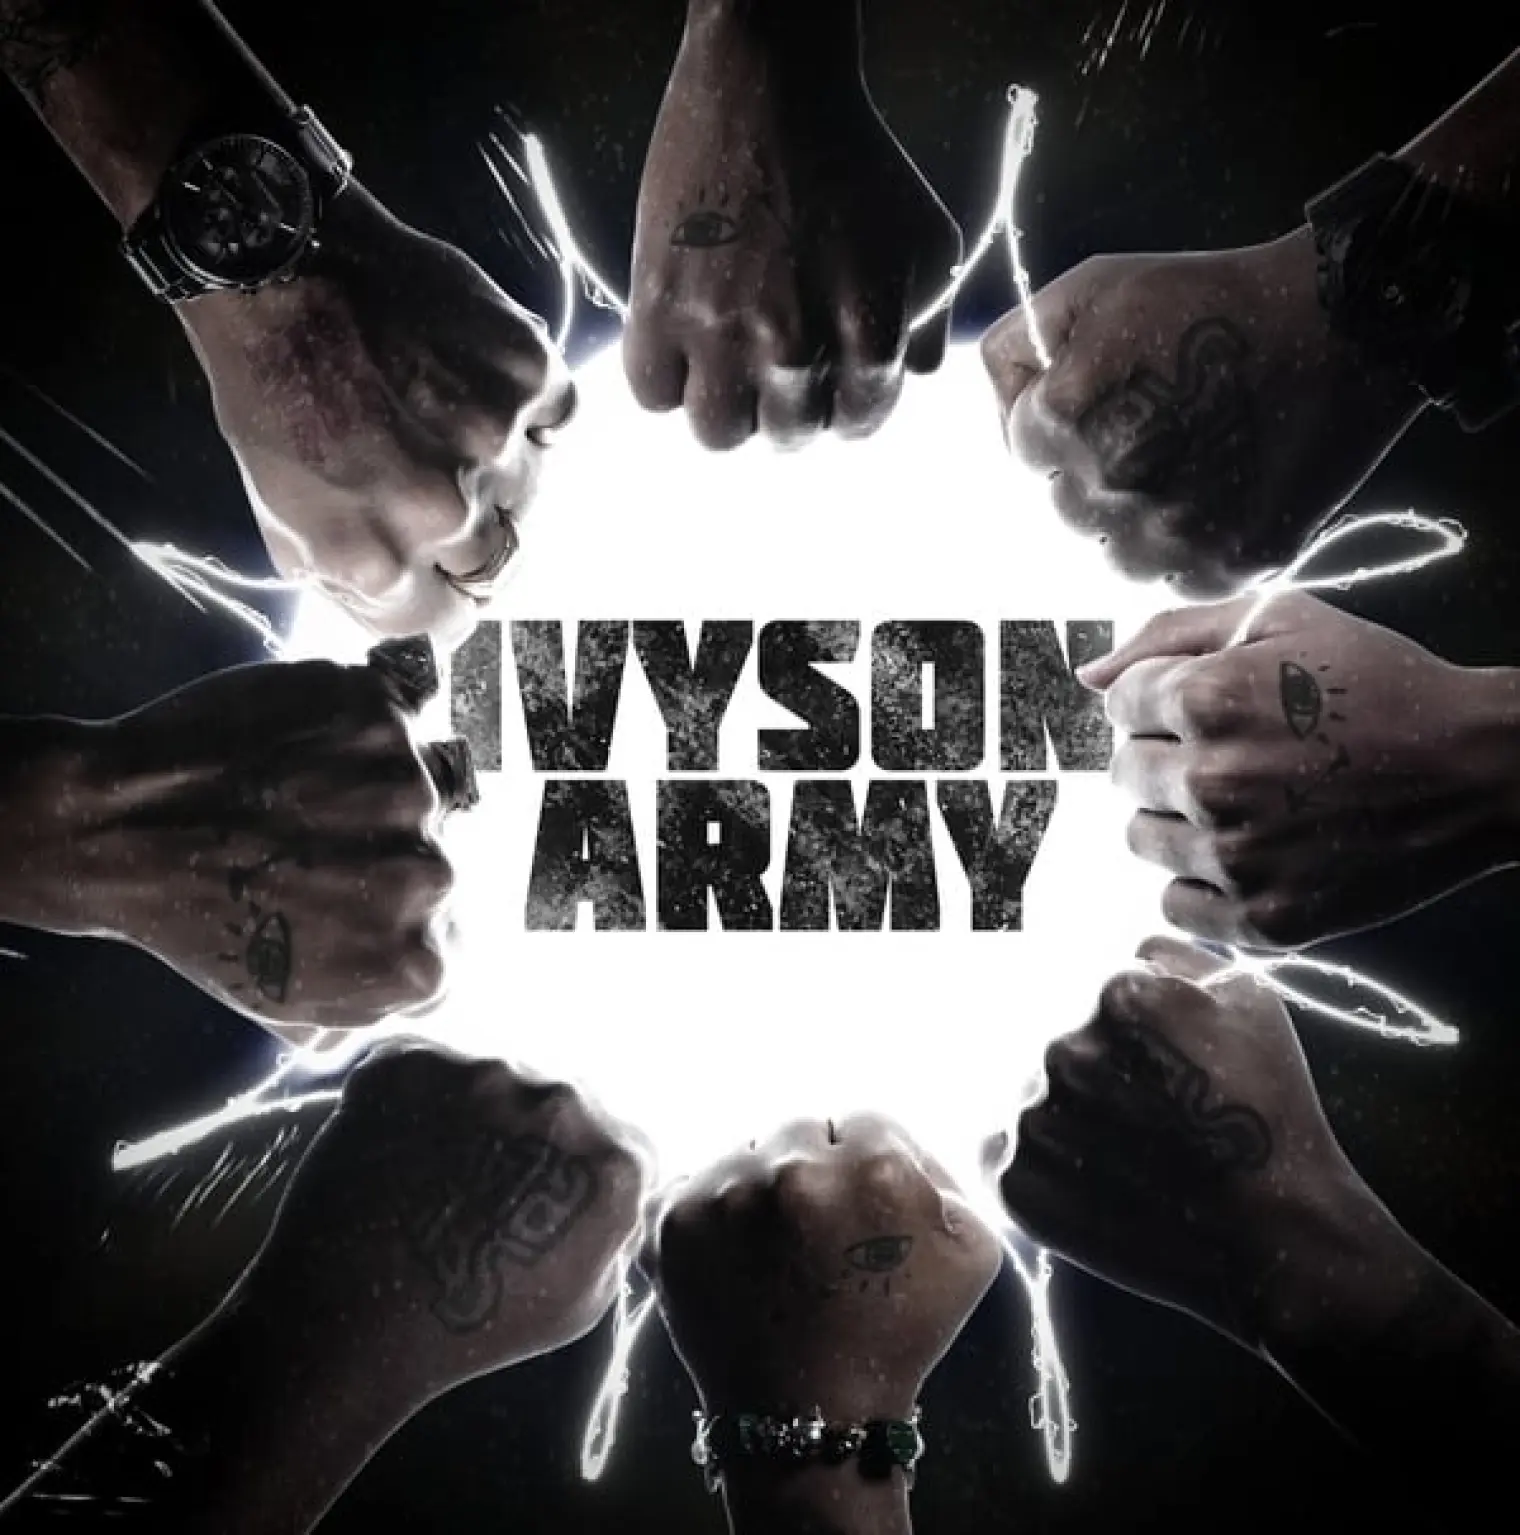 Ivyson Army Tour Mixtape -  Nasty C 